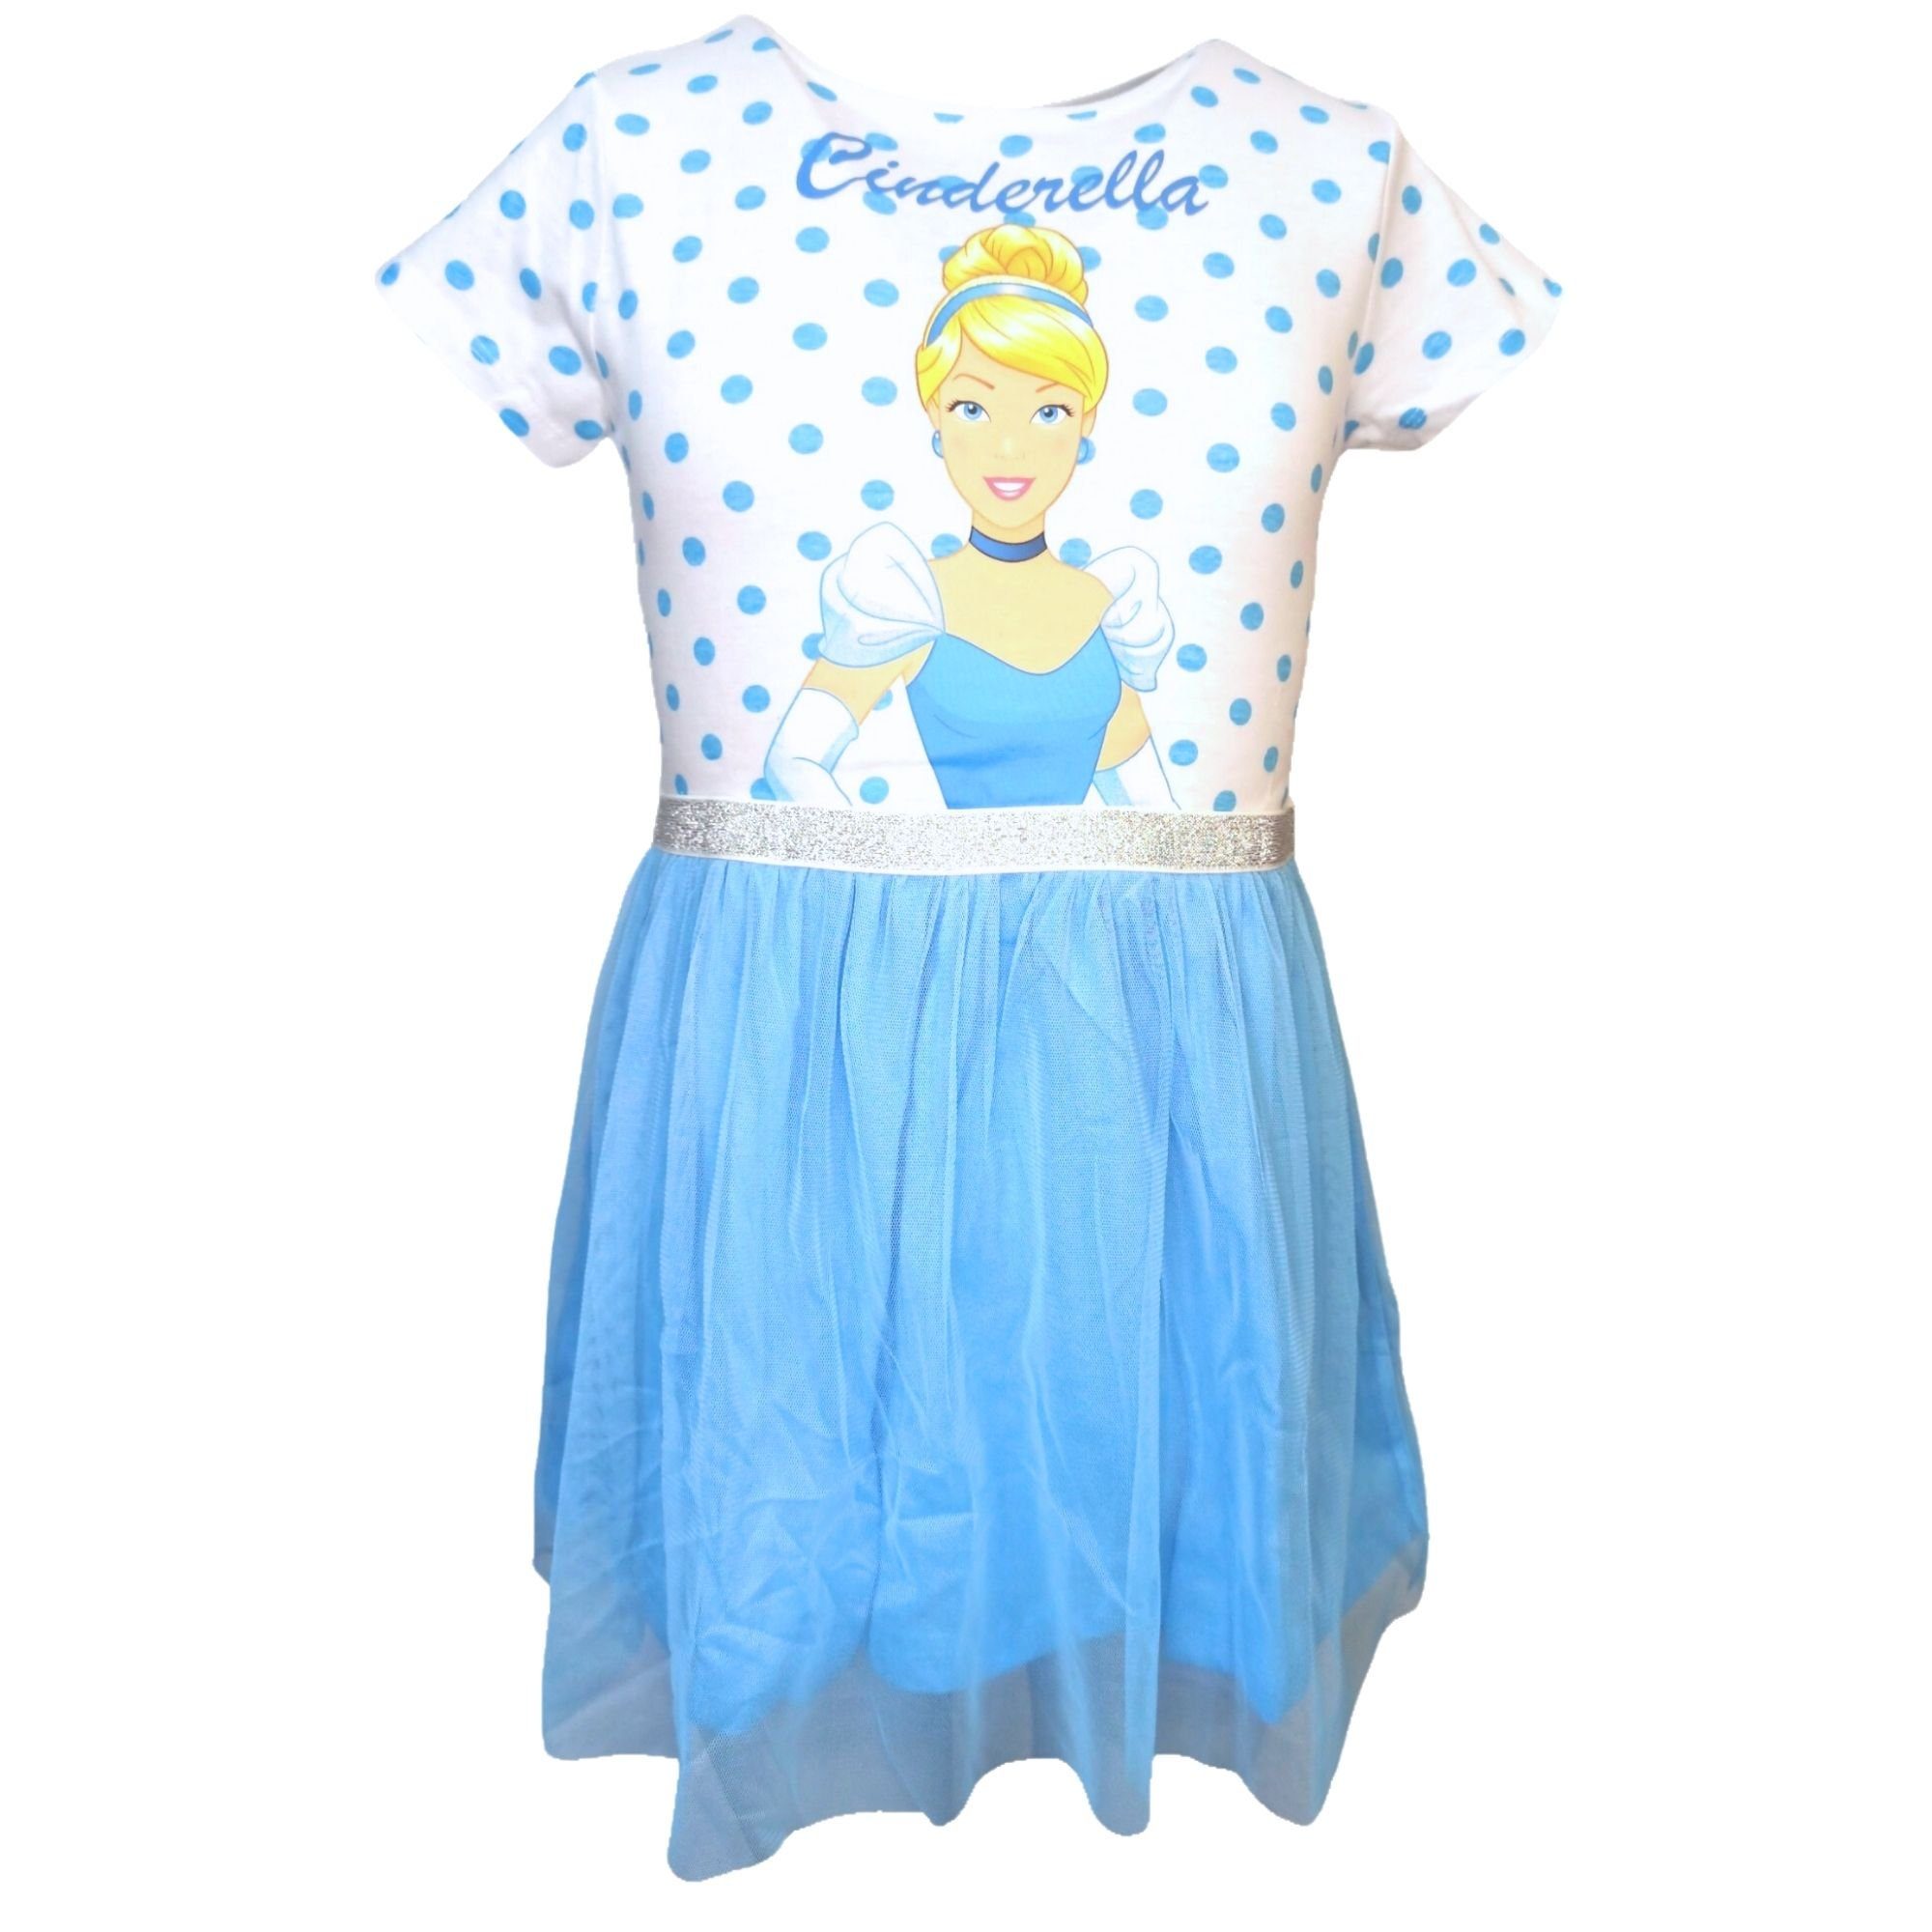 Disney Princess Sommerkleid Cinderella Tüllkleid mit Glitzerdetails Gr. 104 -134 cm